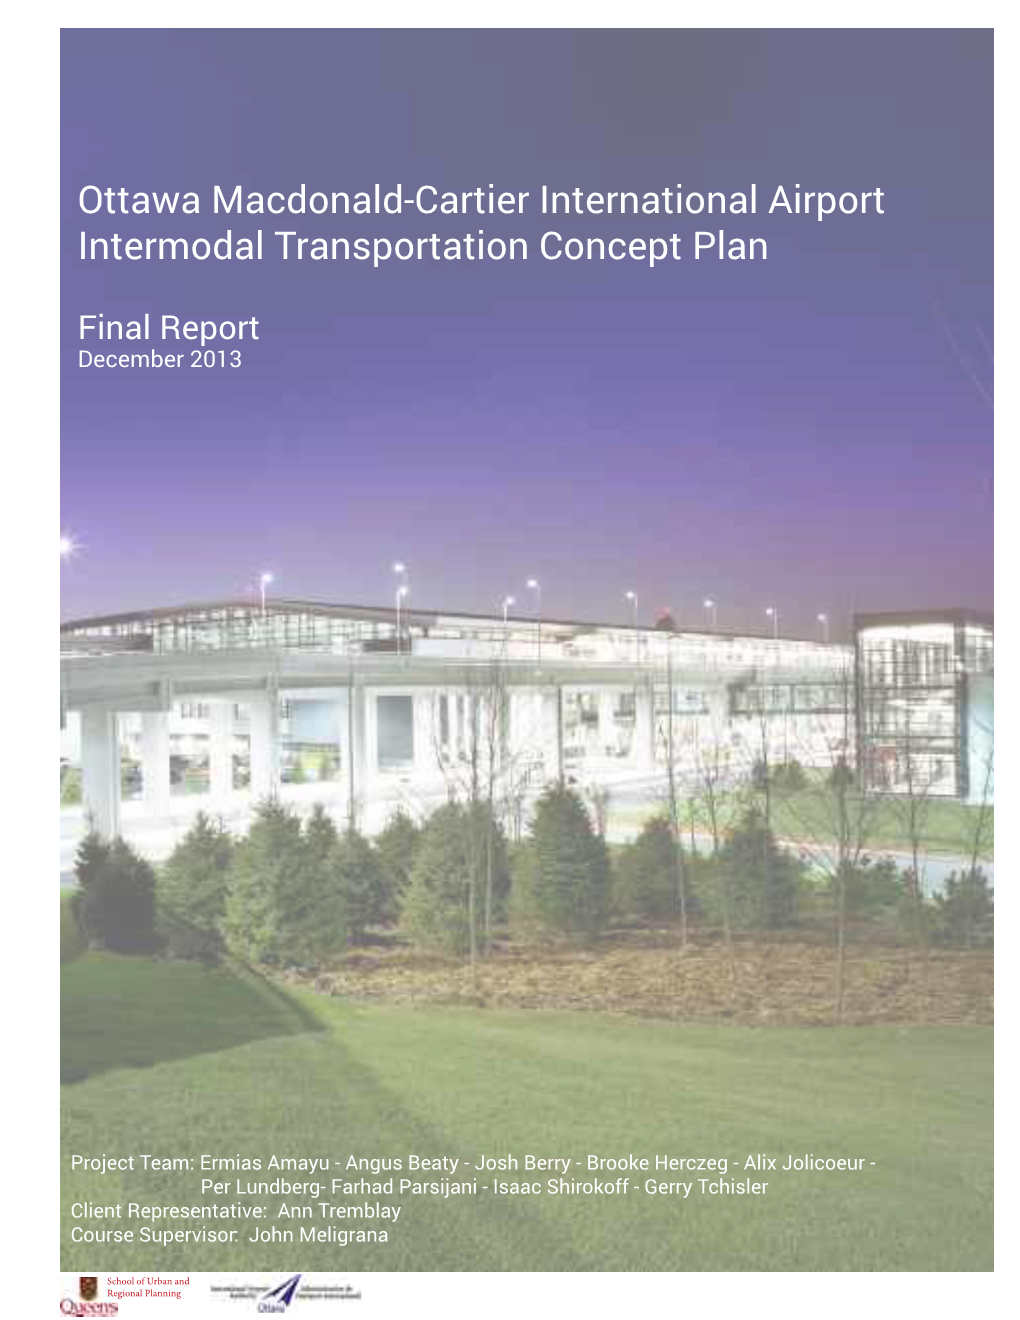 Ottawa Macdonald-Cartier International Airport Intermodal Transportation Concept Plan